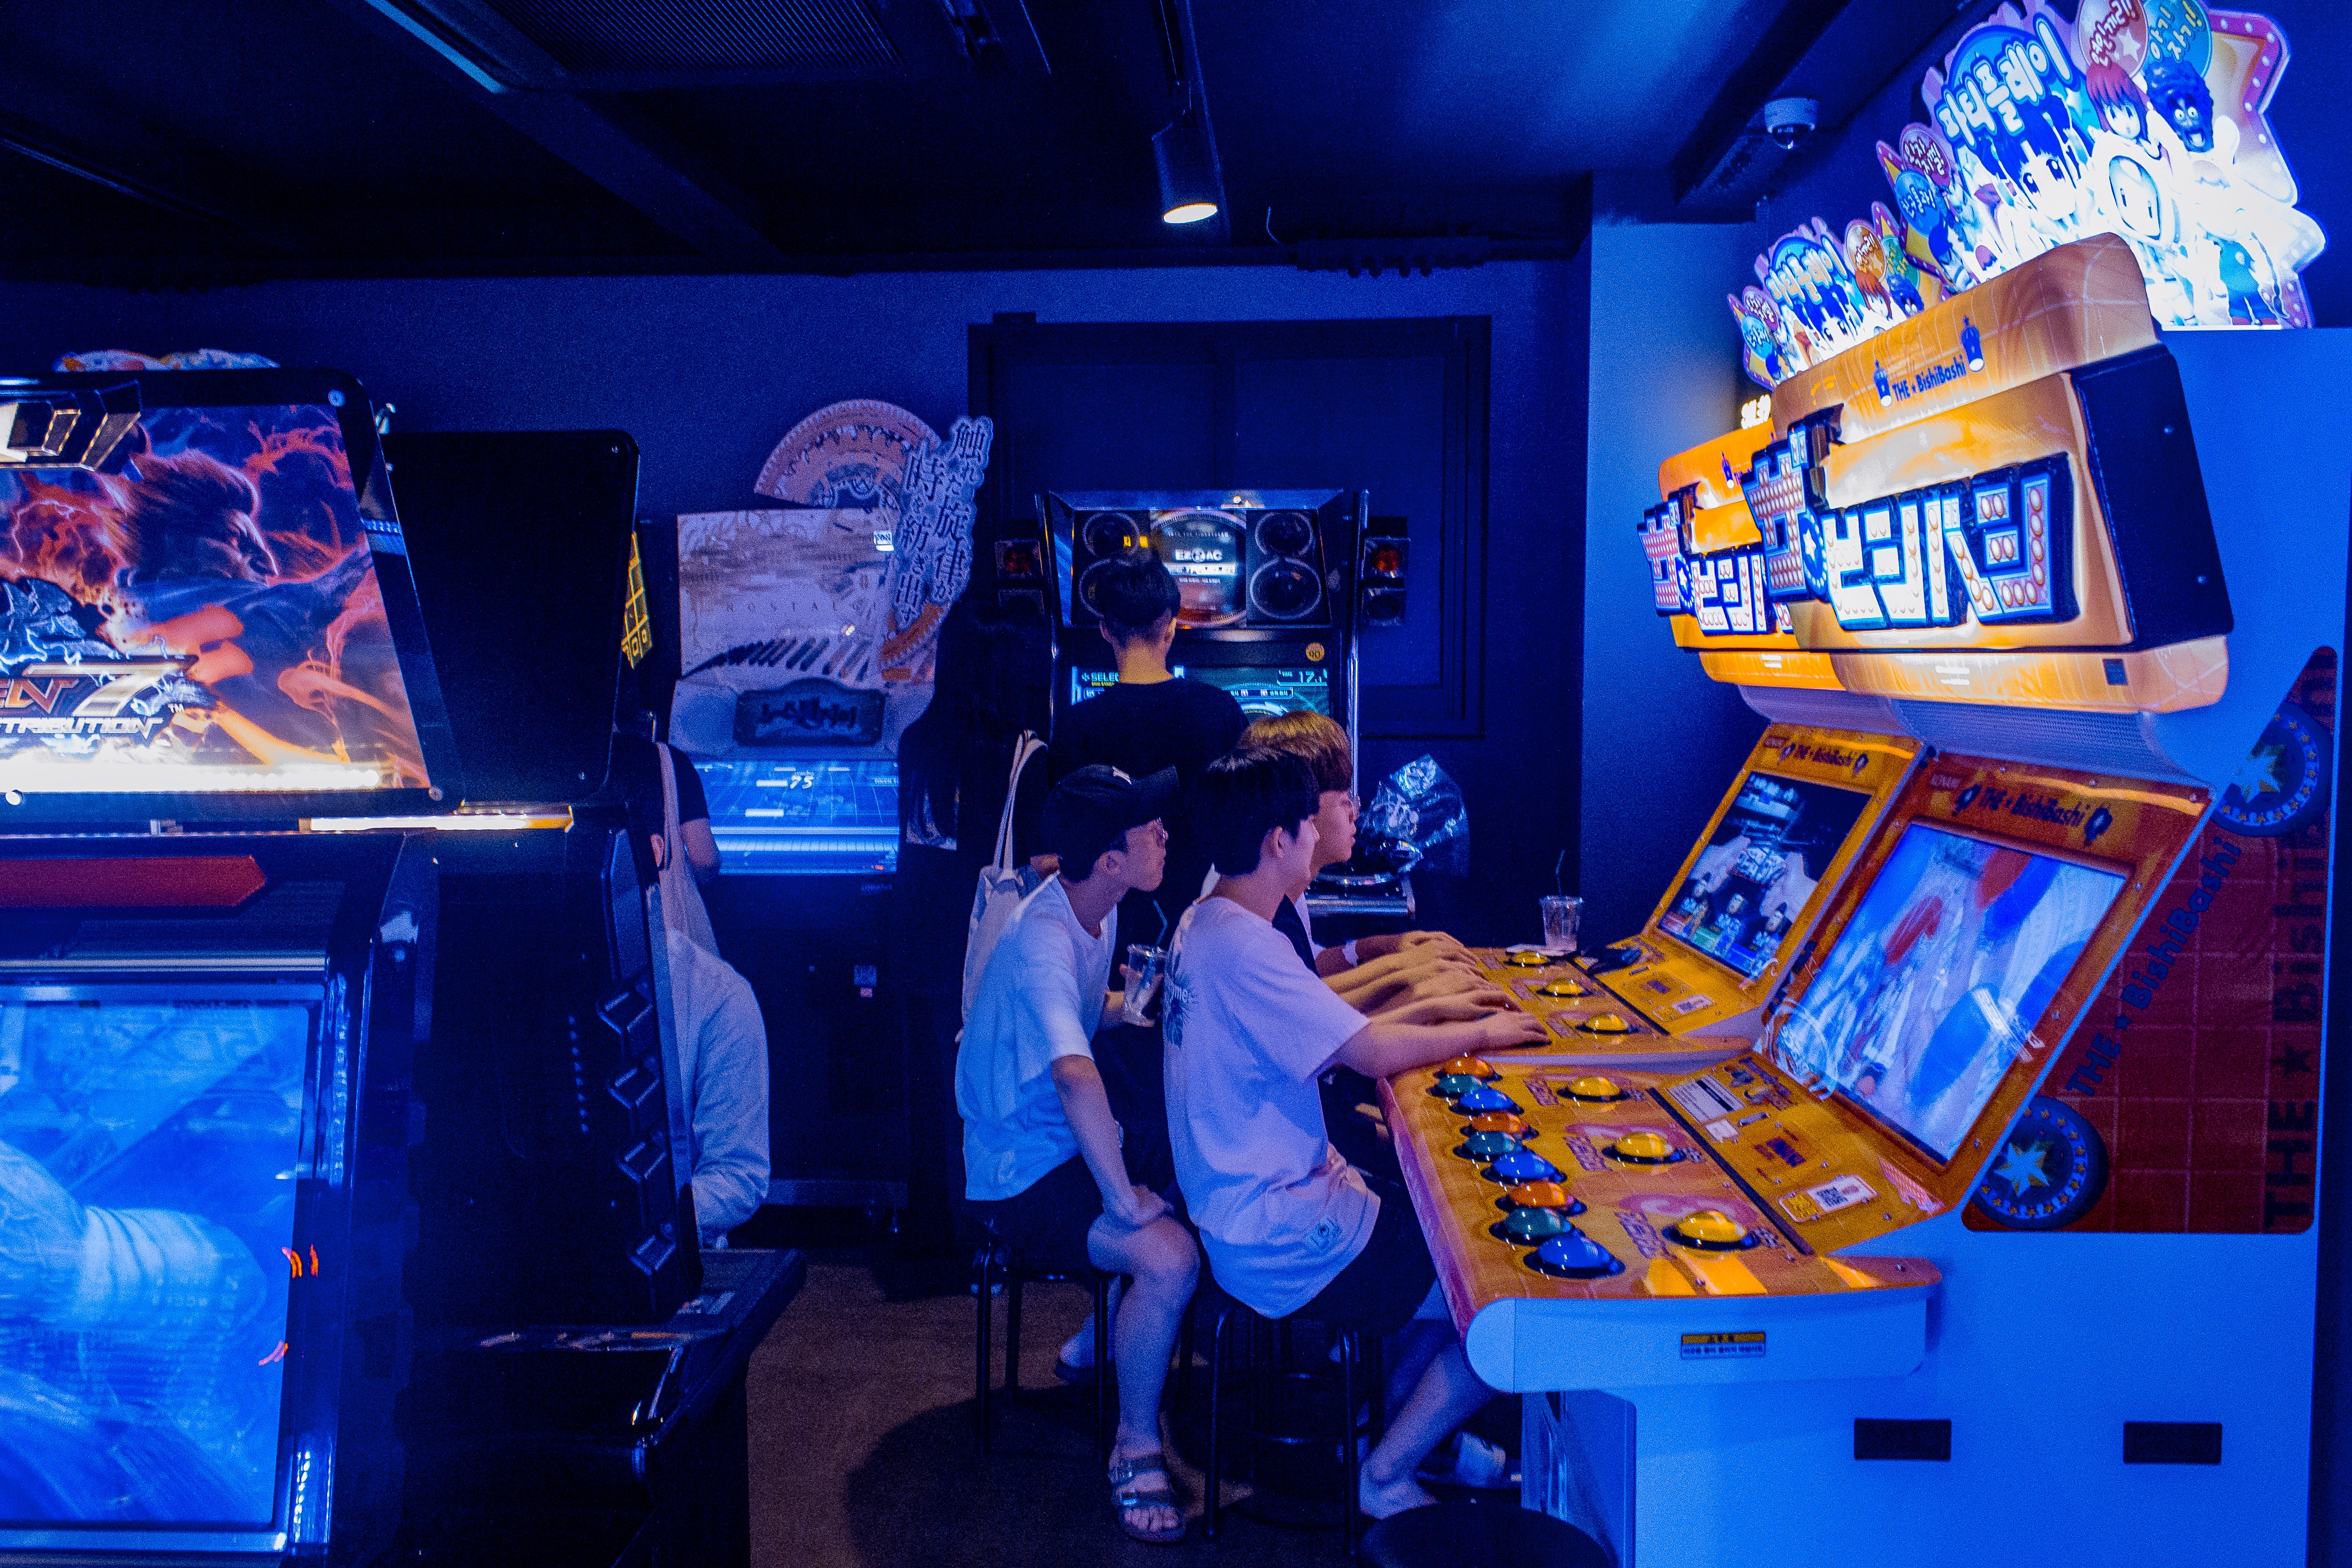 Сервис развлечения. Развлечения в компьютере. Развлечение с компьютером без игр. Игры для 20 человек в помещении. Arcade Korea.